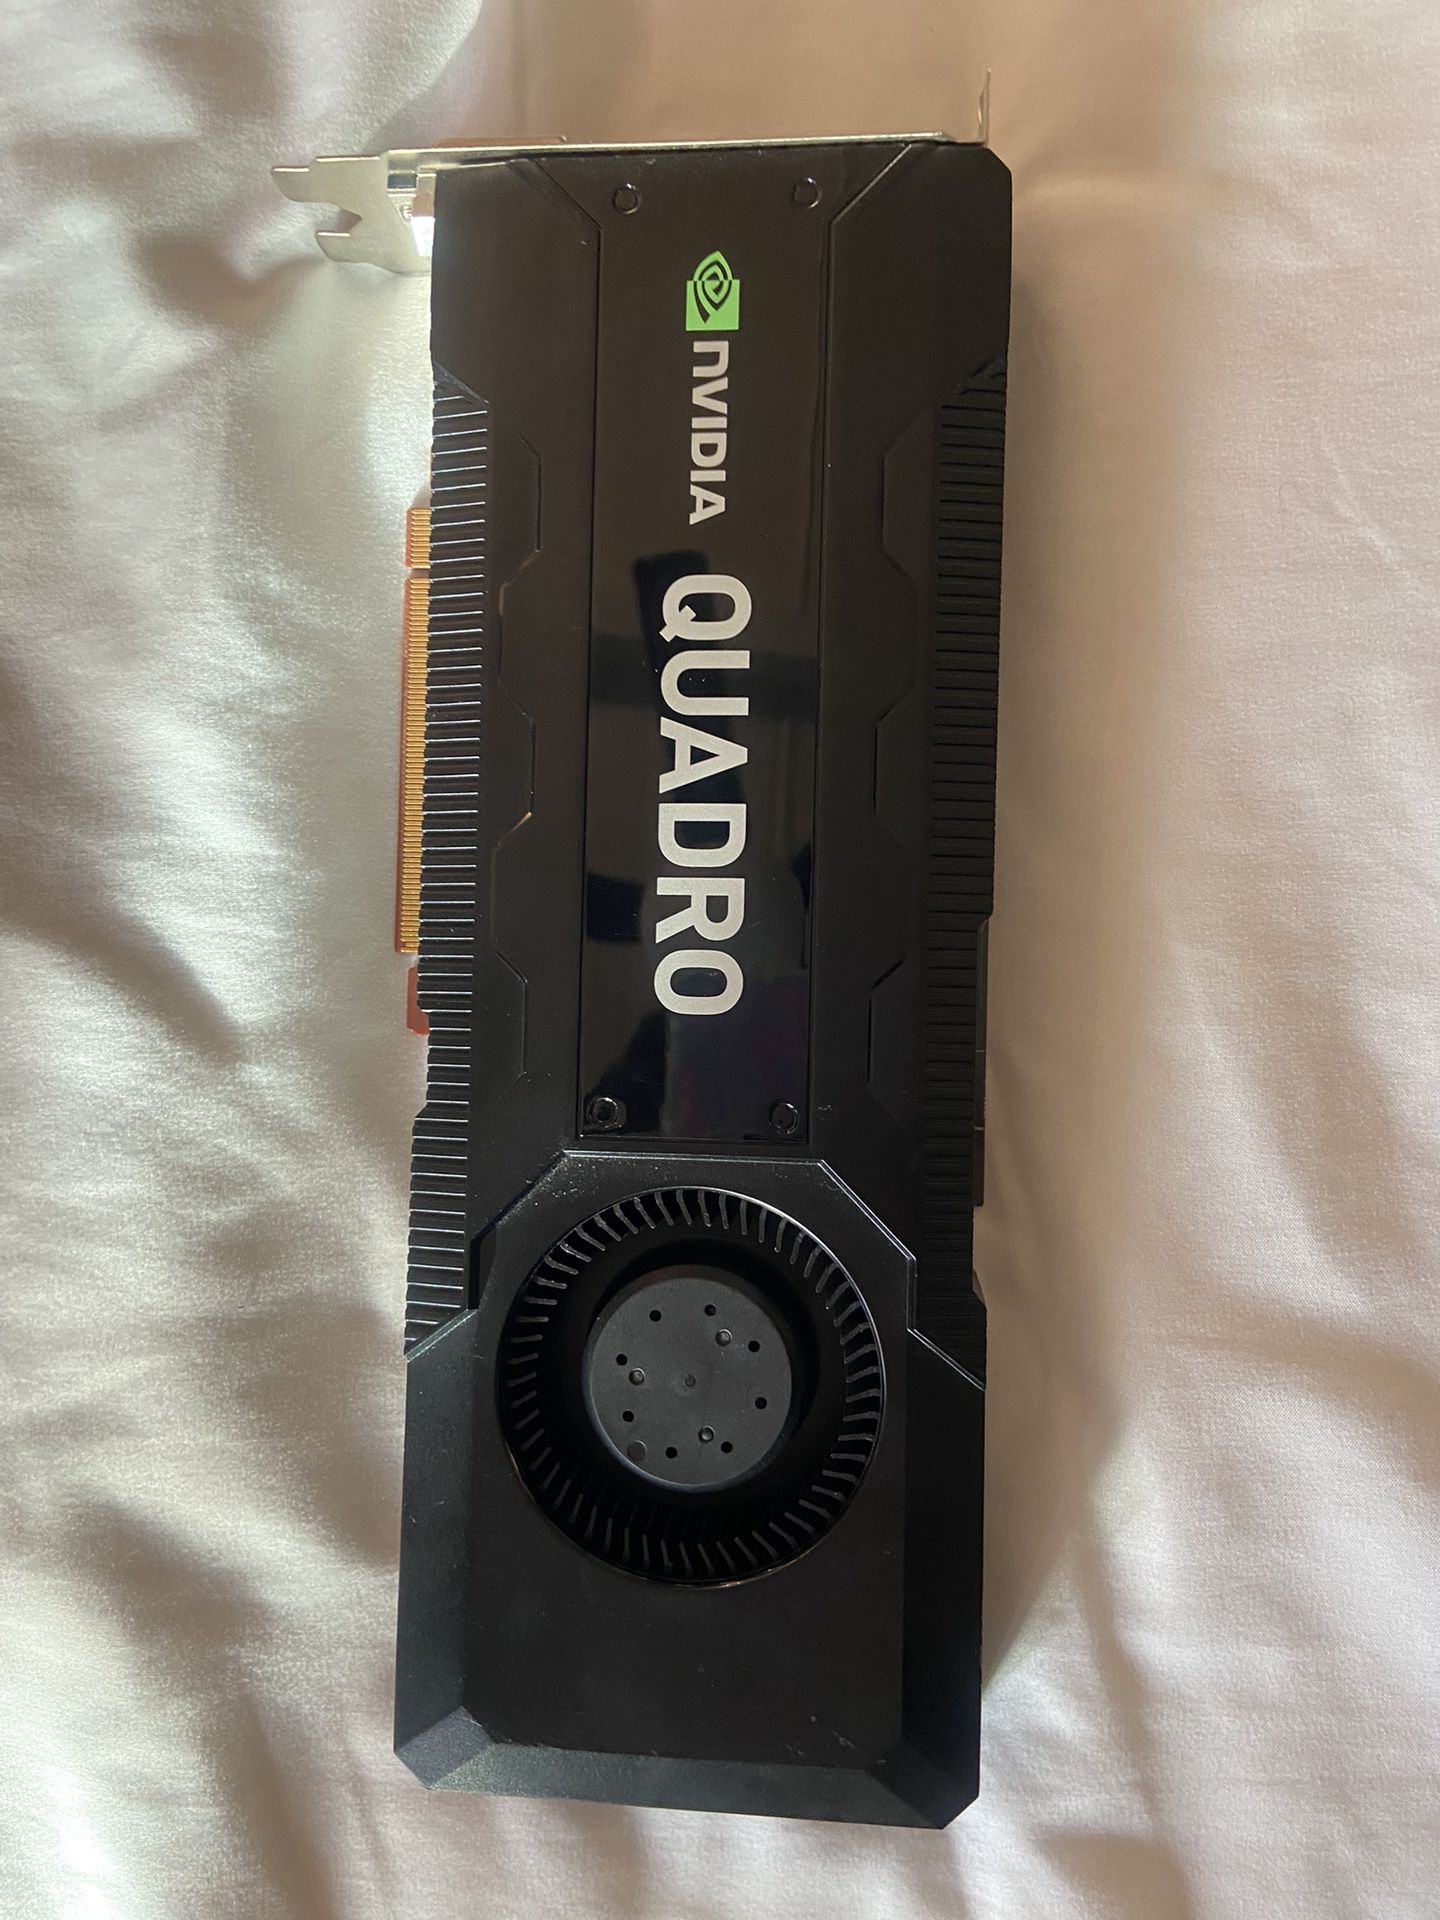 Nvidia Quadro K5000